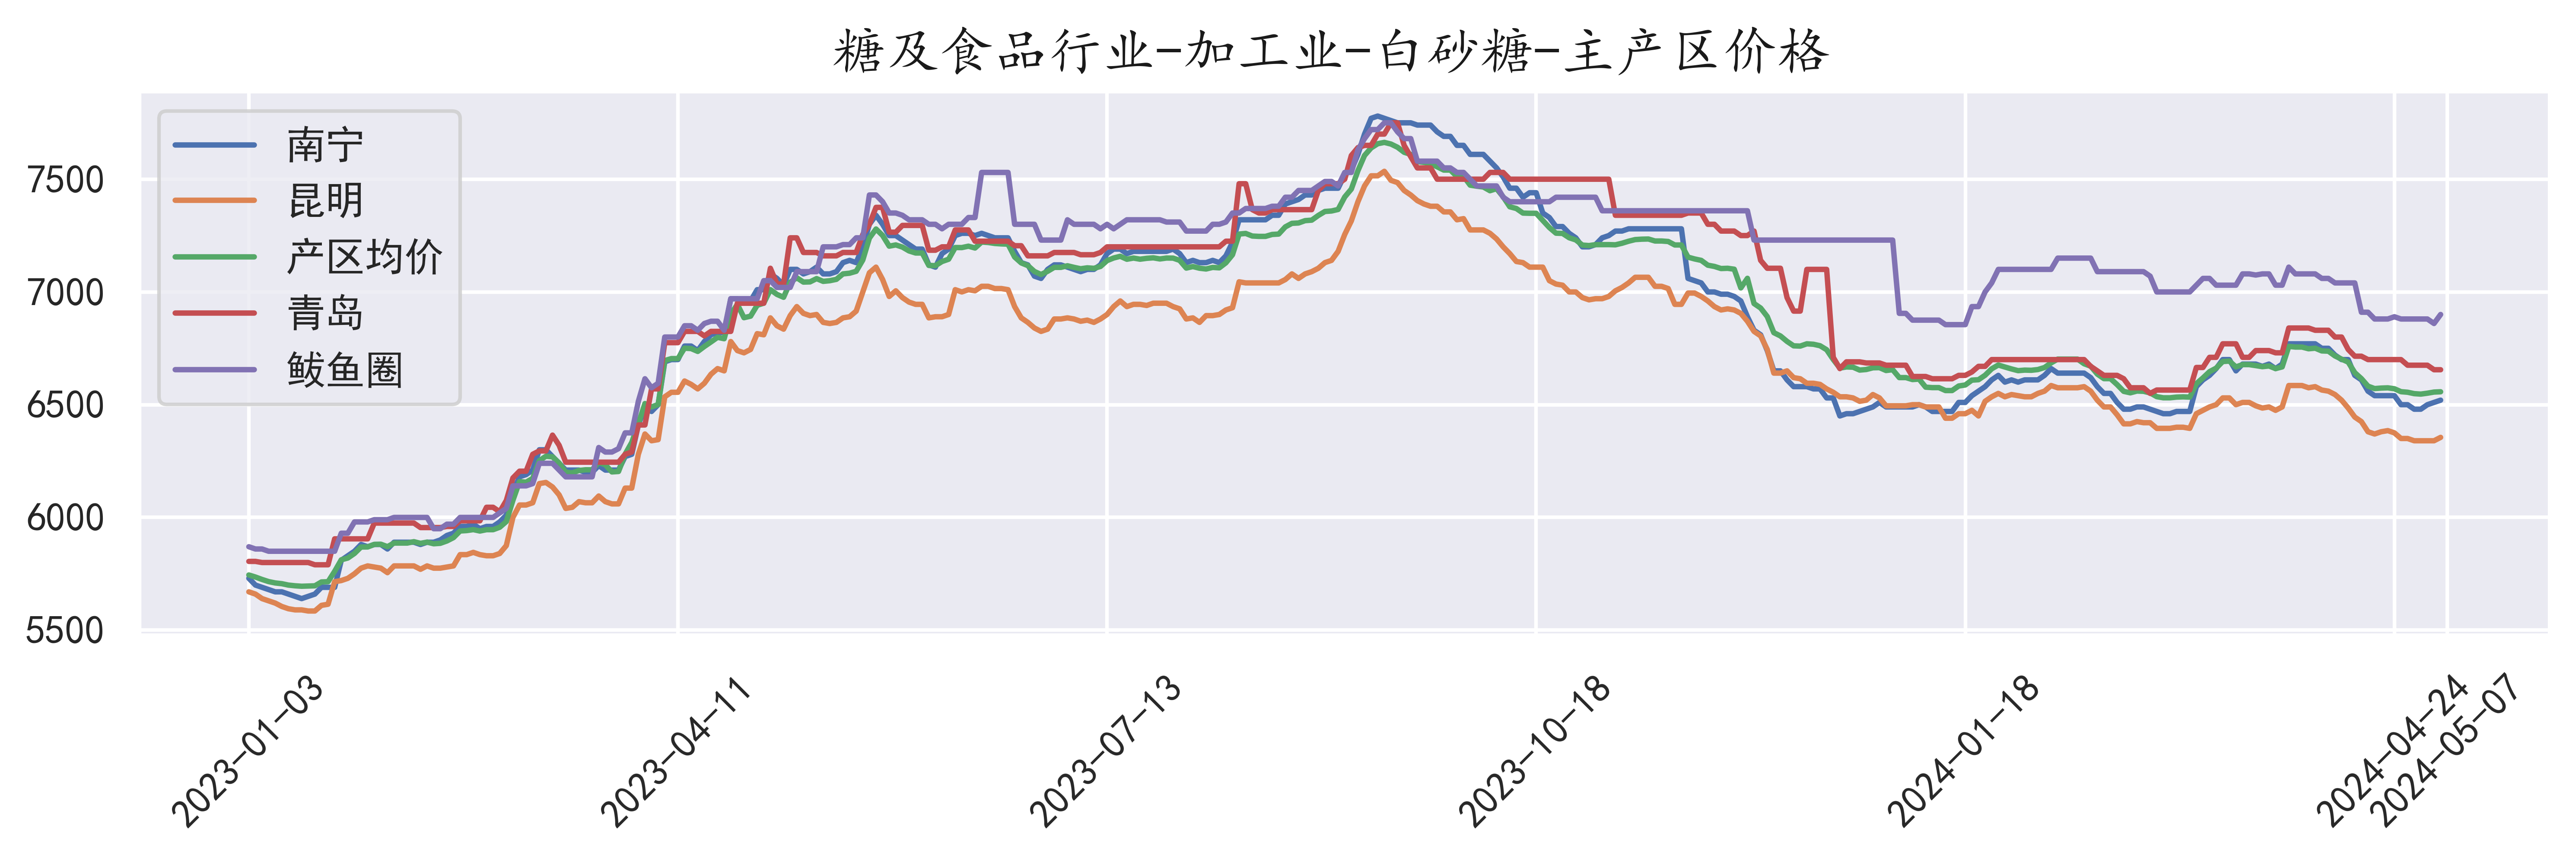 中国白砂糖主产区现货价格监测(中国白砂糖厂)